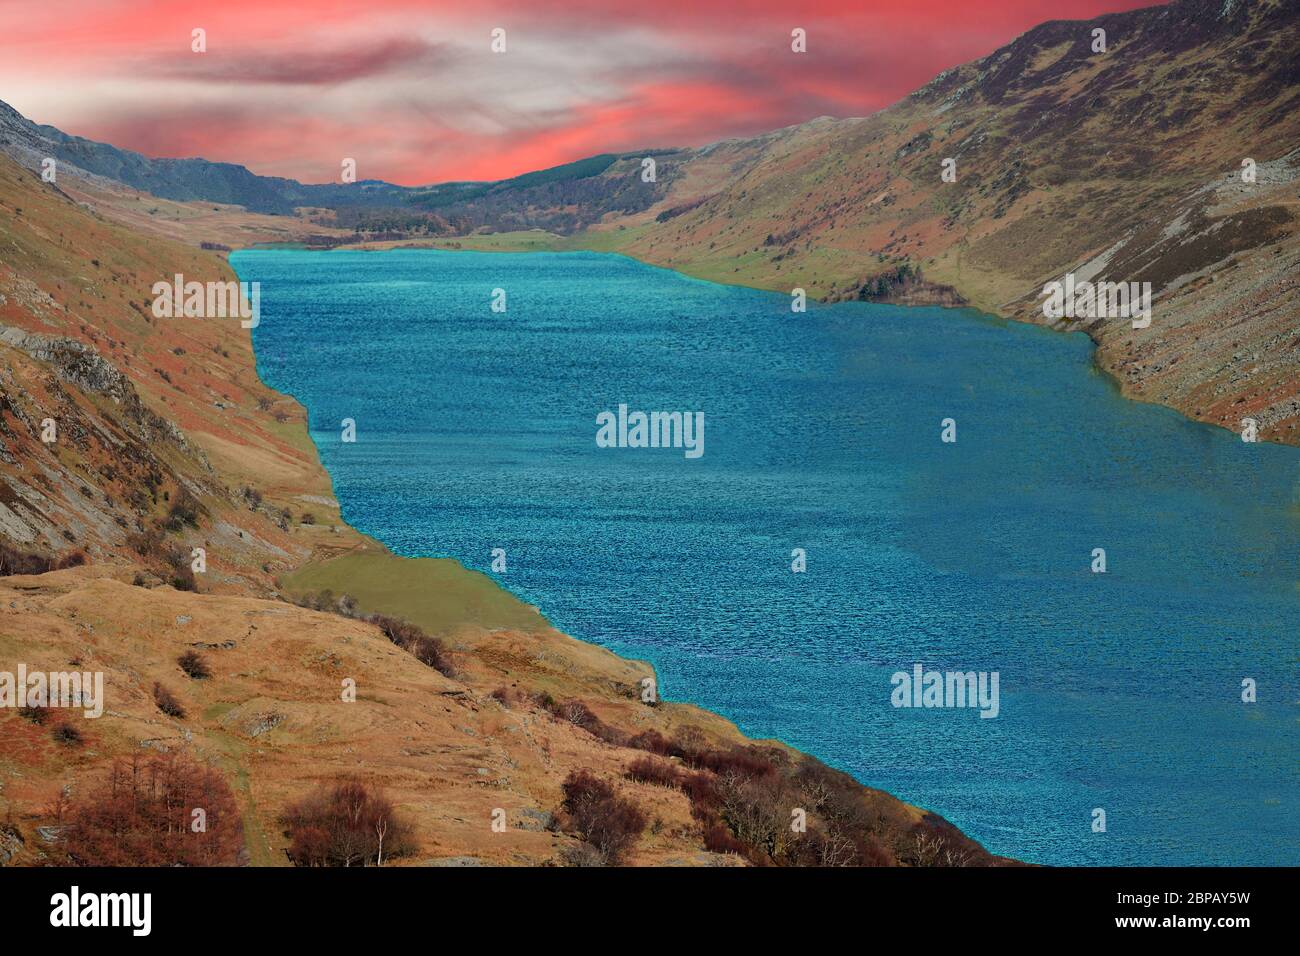 Una ricostruzione del lago Ffrancon in Snowdonia. Questo lago glaciale è scomparso circa 5000 anni fa possibile a causa di un crollo terminale morenico. Foto Stock